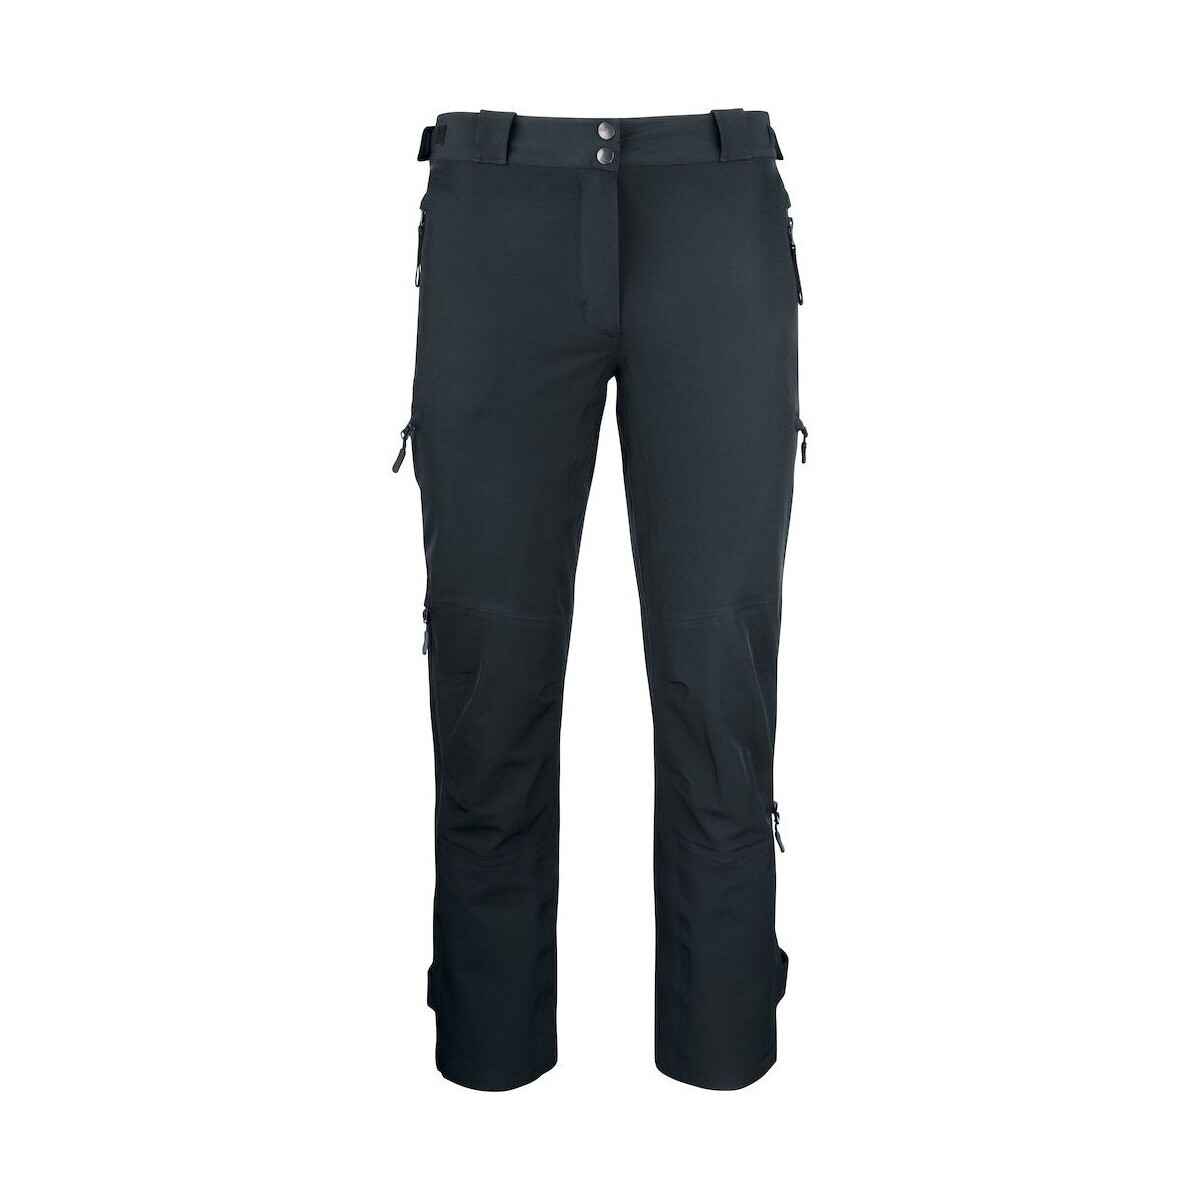 textil Pantalones C-Clique Sebring Negro